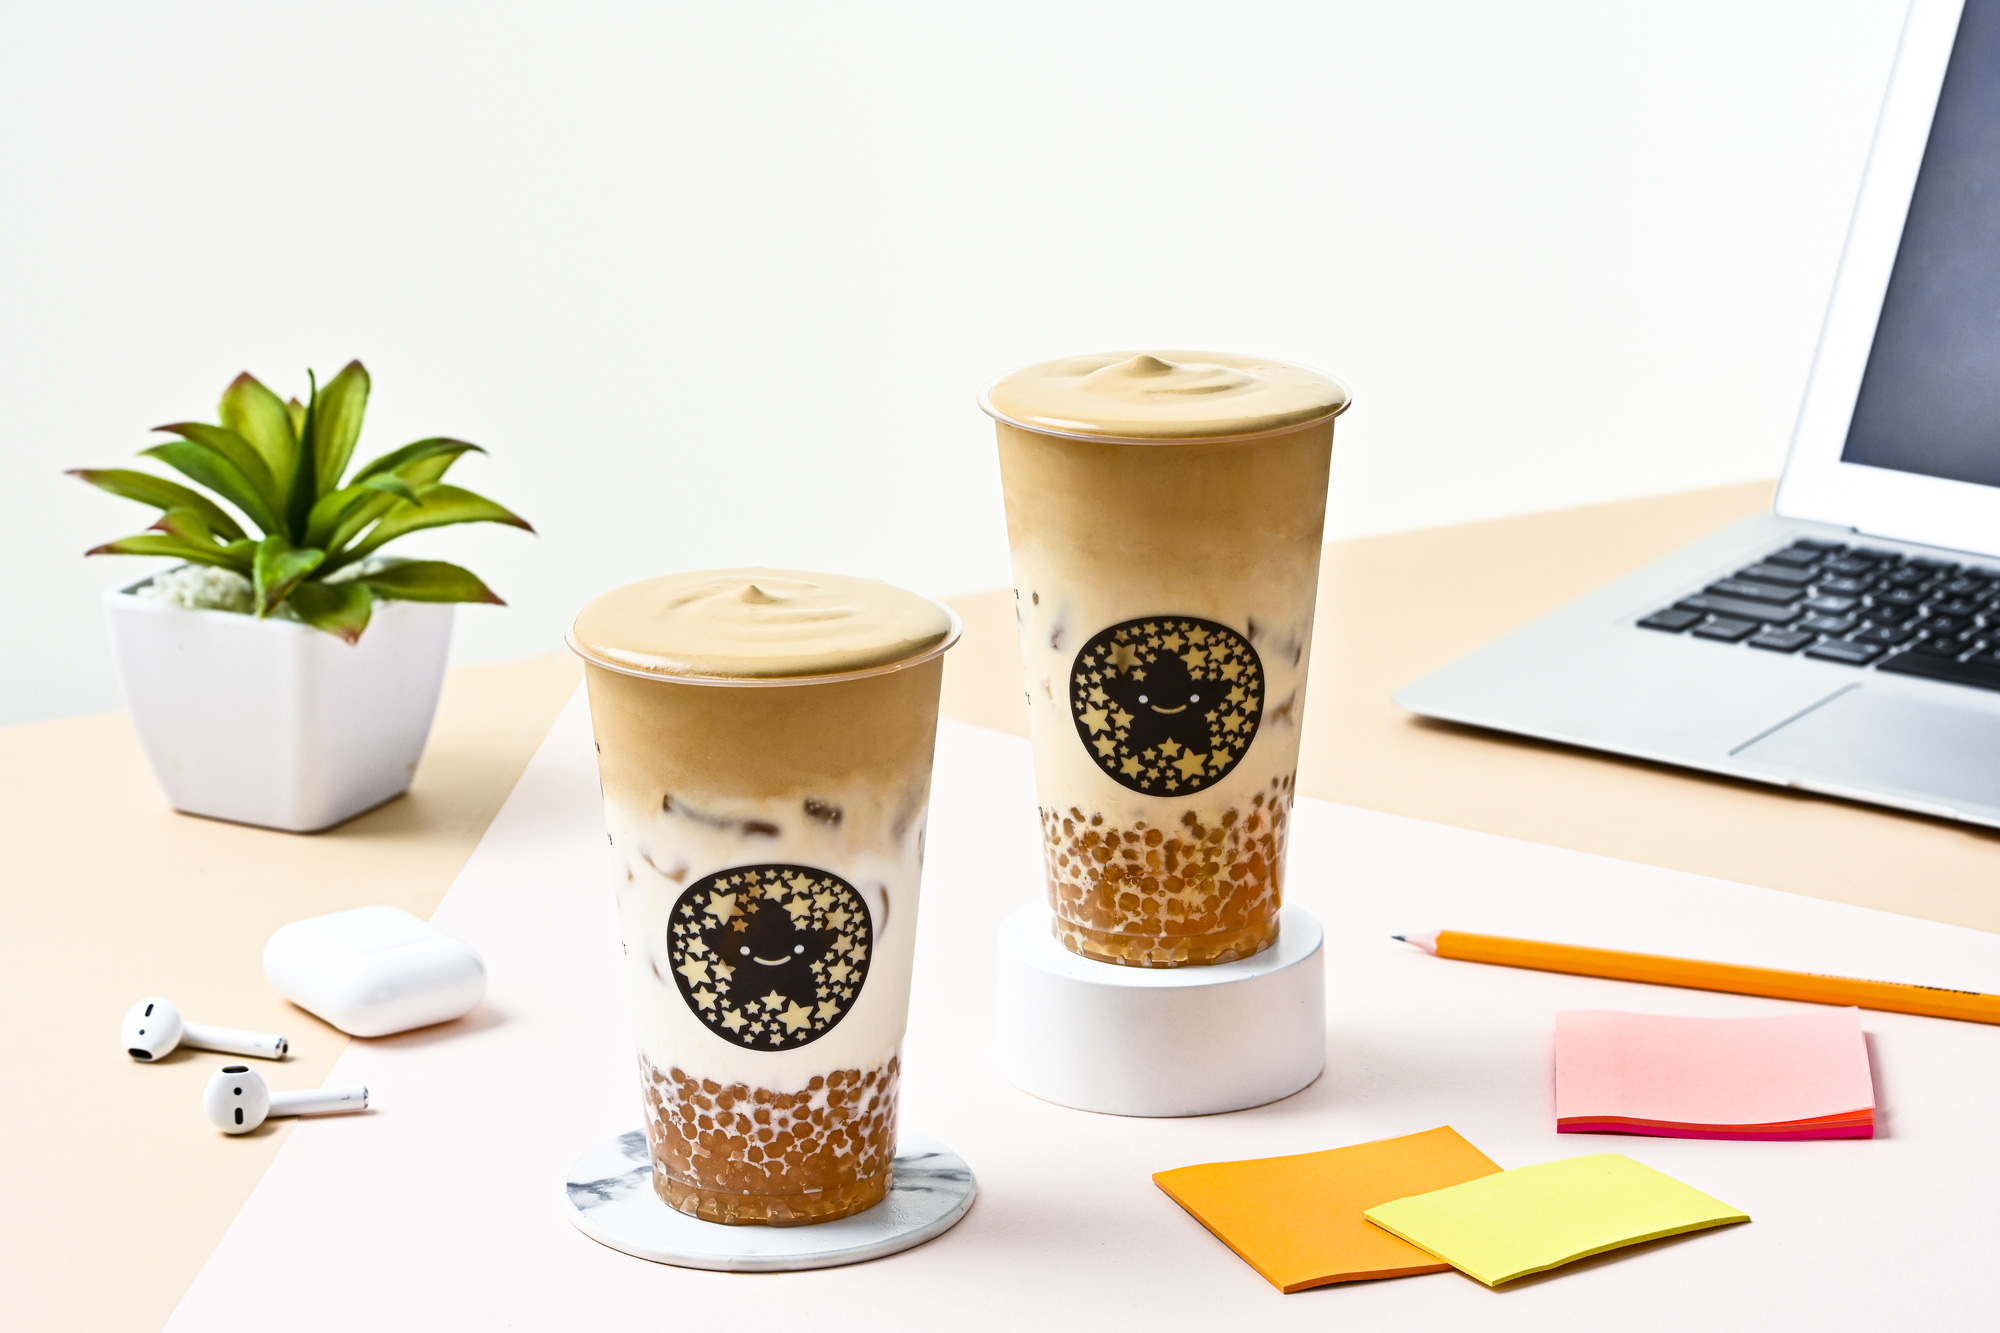 “5 điều hấp dẫn không thể chối từ” trong bộ đôi kem cà phê của thương hiệu trà sữa ToCoToCo - Ảnh 1.